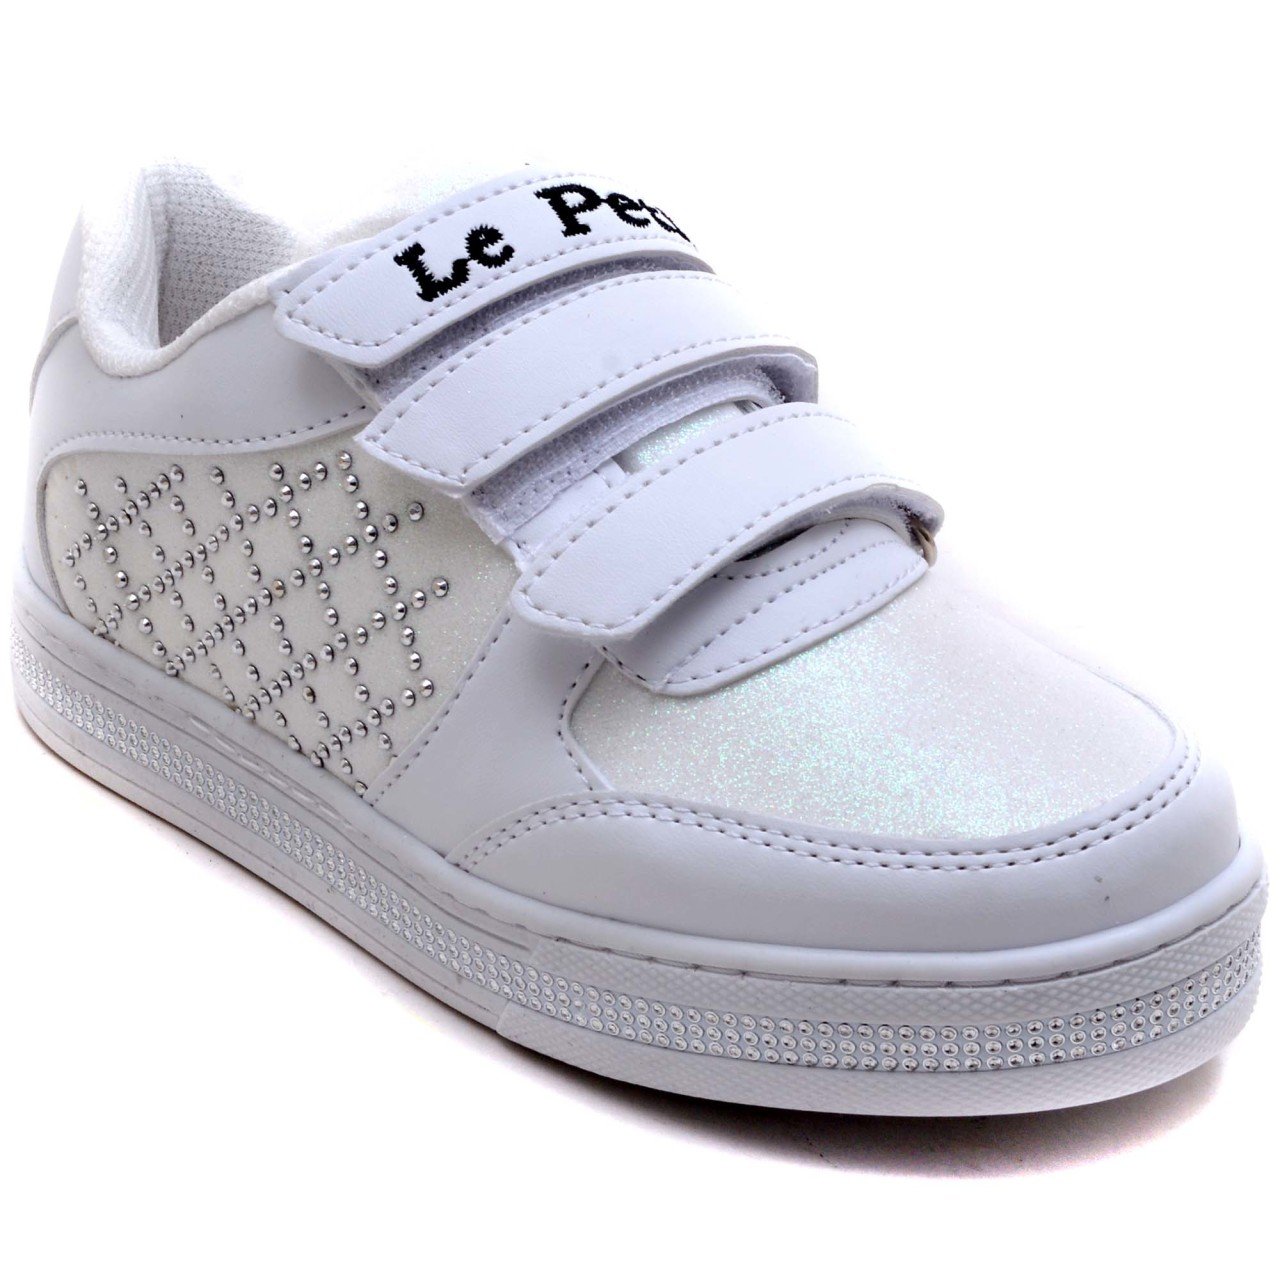 LPT-889 Filet Spor Ayakkabı - Beyaz